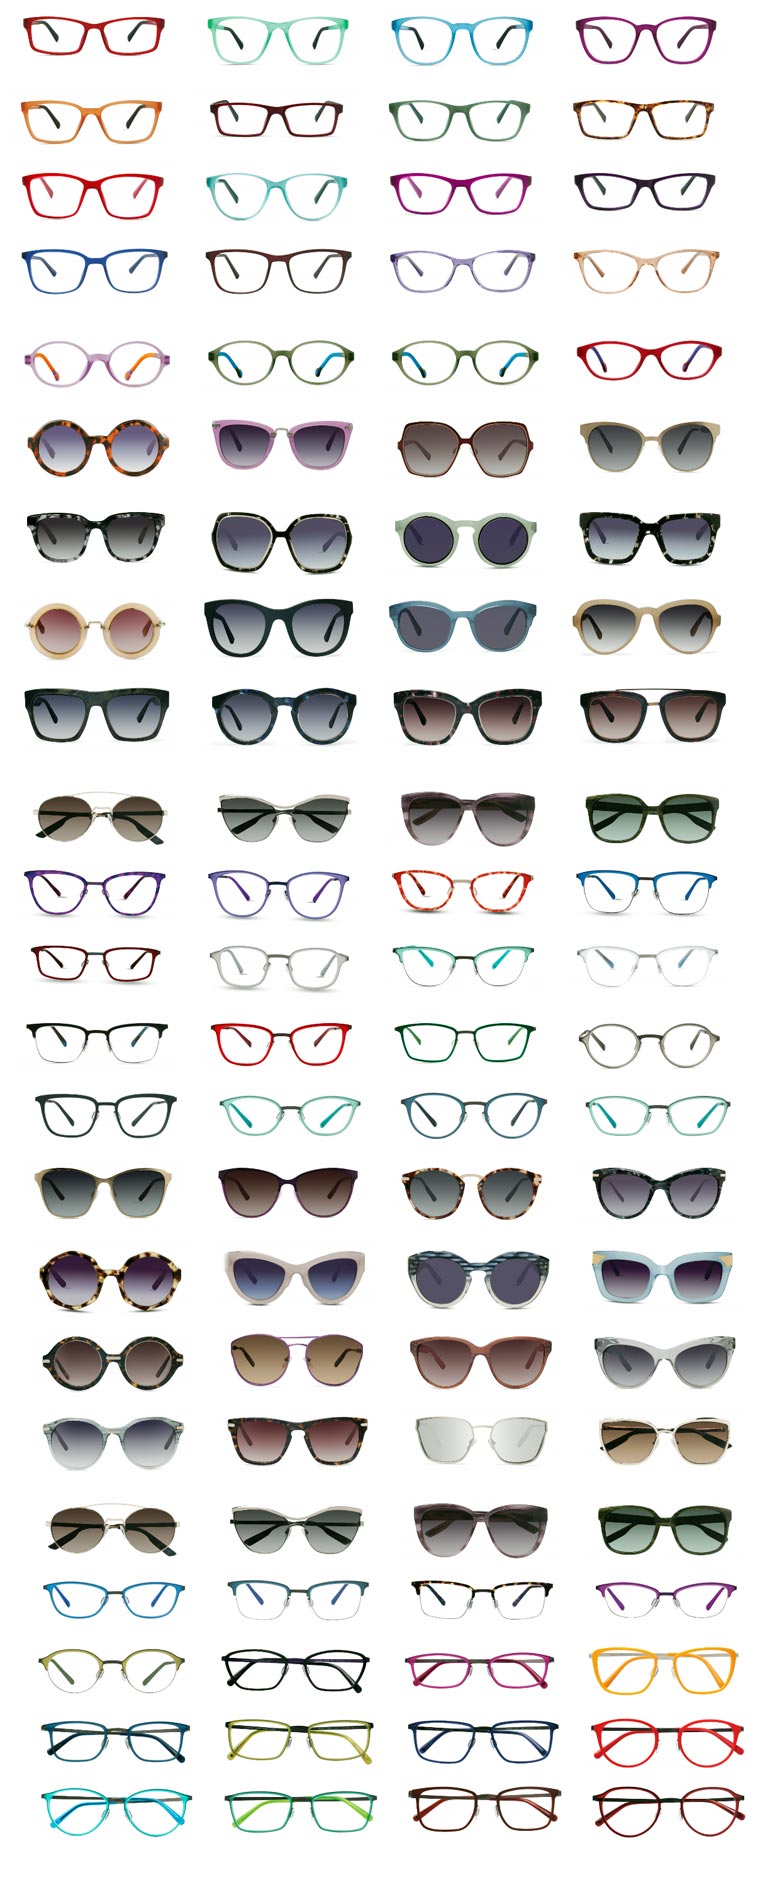 modo eyeglass and sunlglass designer frames